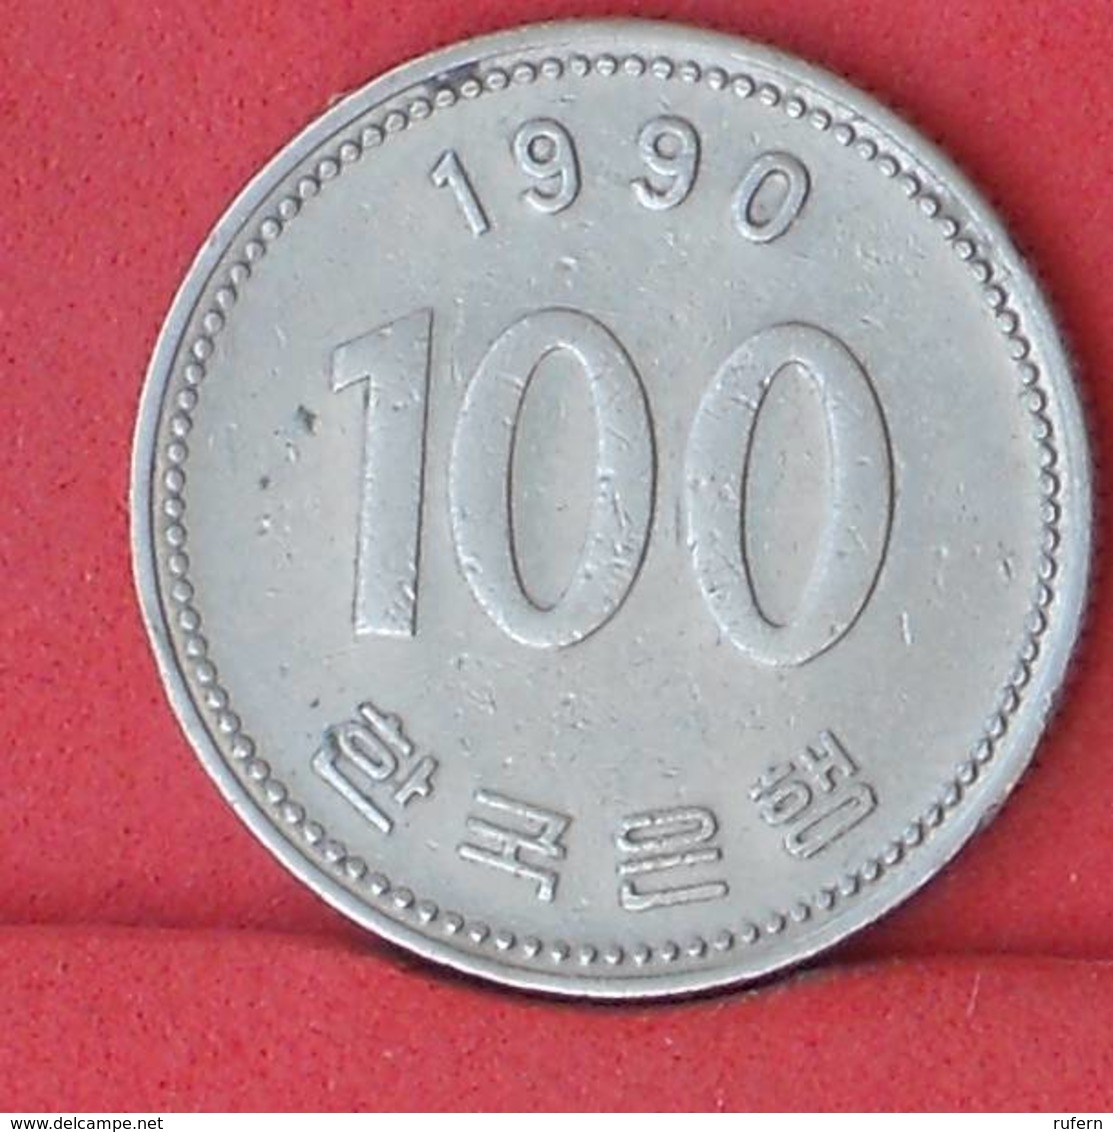 KOREA 100 WON 1990 -    KM# 35,2 - (Nº33817) - Corea Del Sud